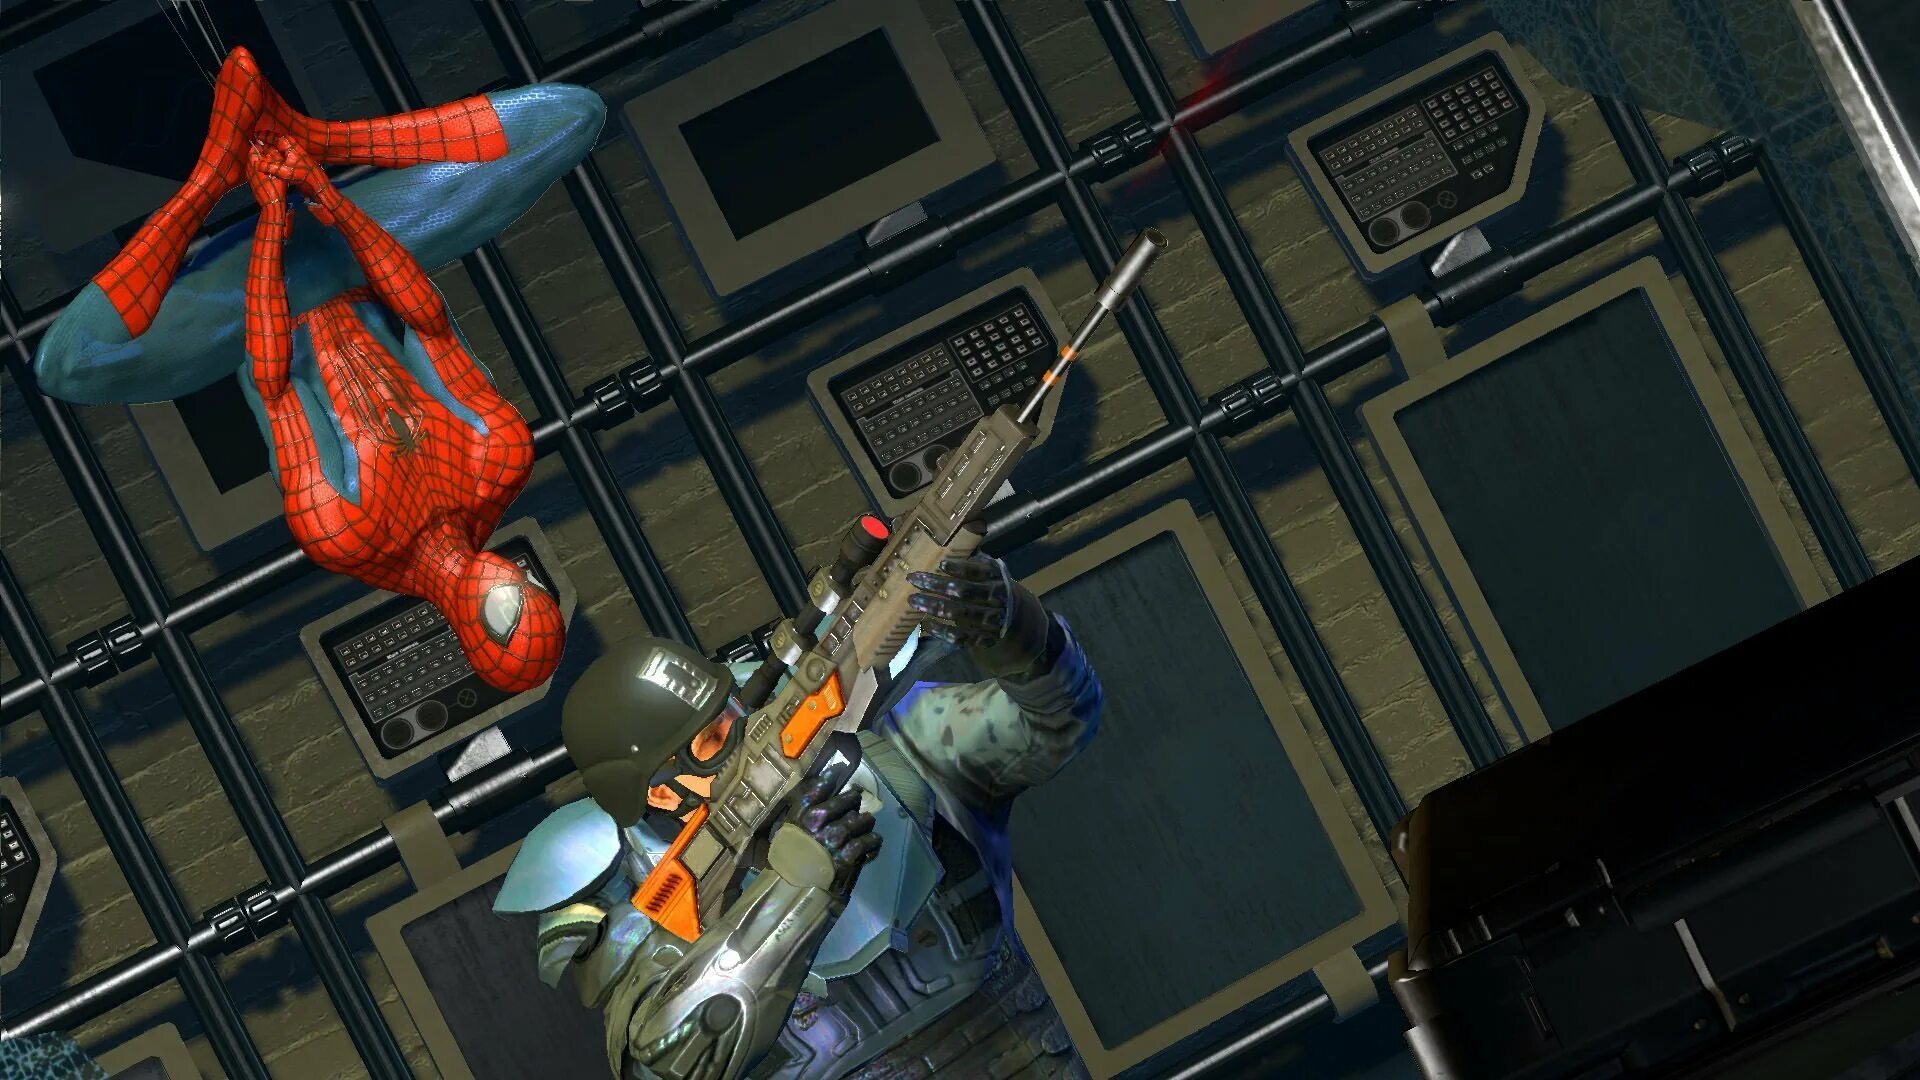 The amazing Spider-man (игра, 2012). The amazing Spider-man 2 (игра, 2014). Человек паук Амейзинг 2. Spider man 2014 игра. Spider man 2 1.1 2